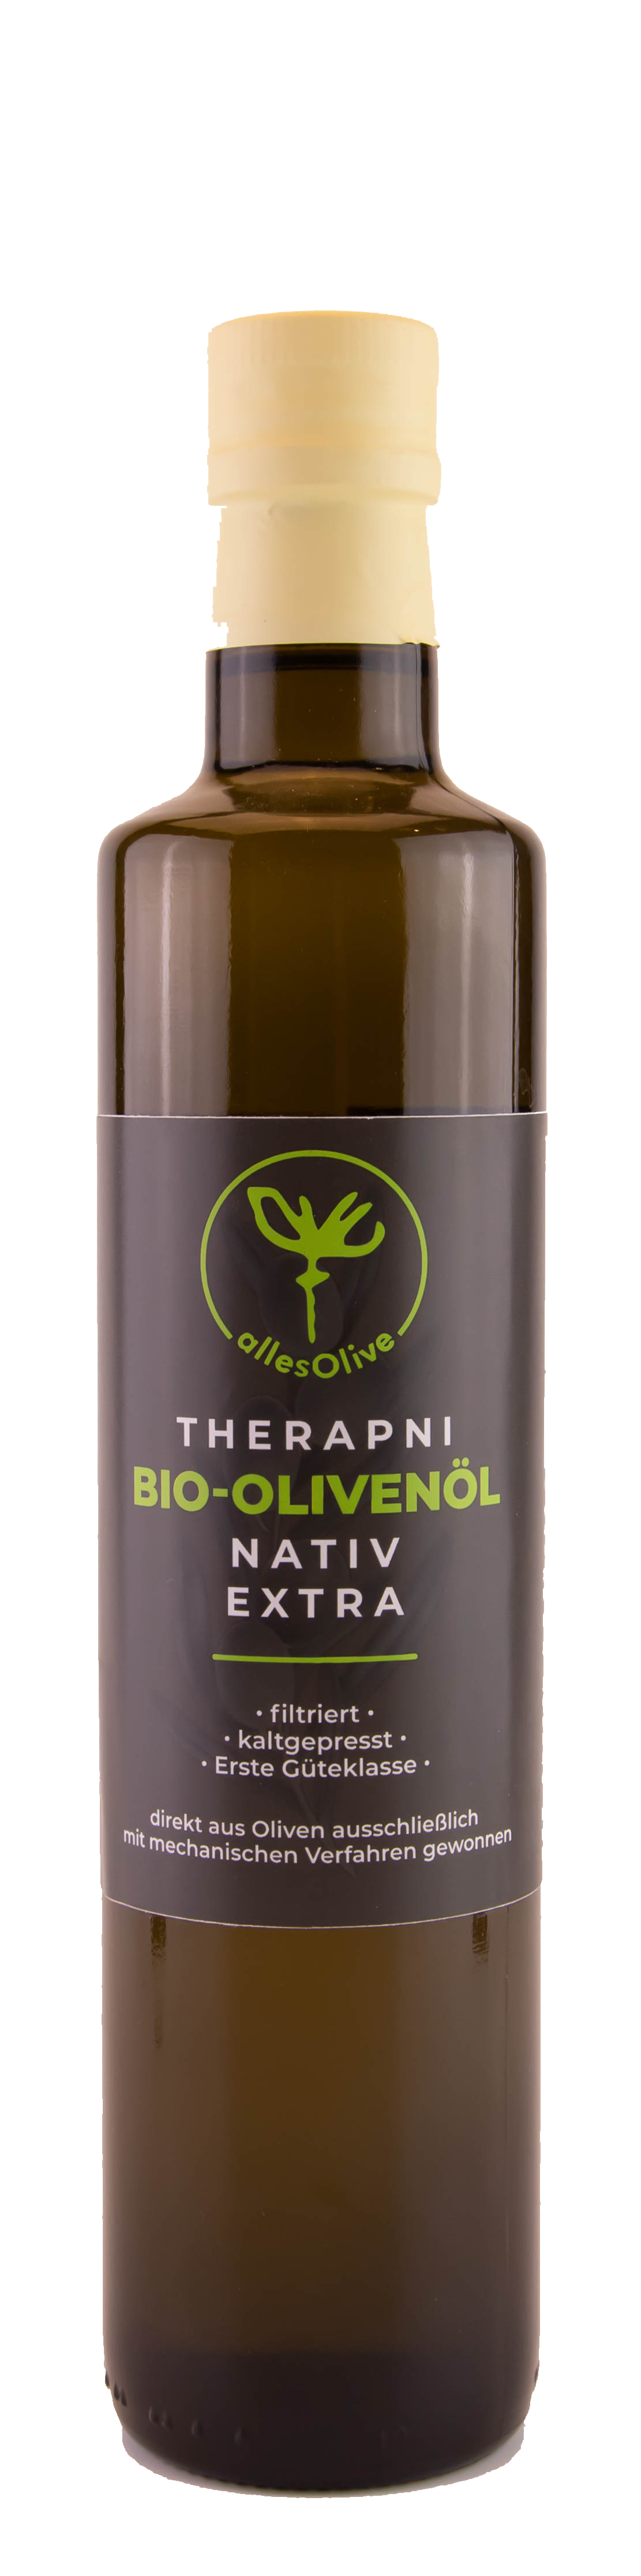 THERAPNI Olio di Oliva Extra Vergine Biologico, filtrato, bottiglia da 500ml